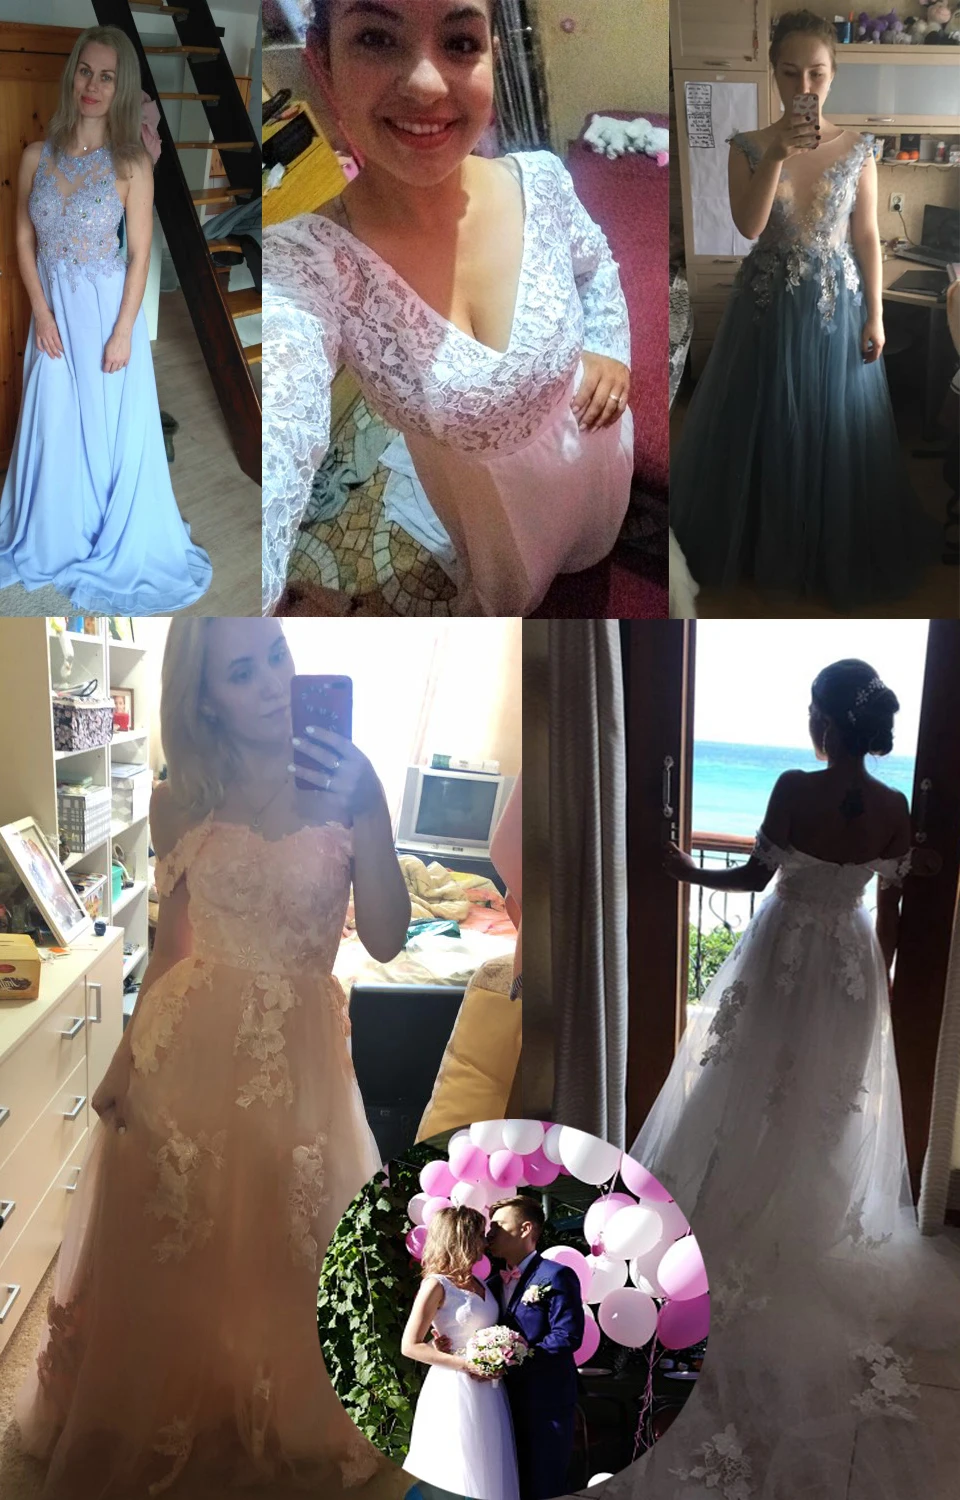 LORIE/свадебное платье 2019, кружевной топ, длинная юбка с шлейфом, платье для невесты, а-силуэт, летнее пляжное свадебное платье, vestido de casamento